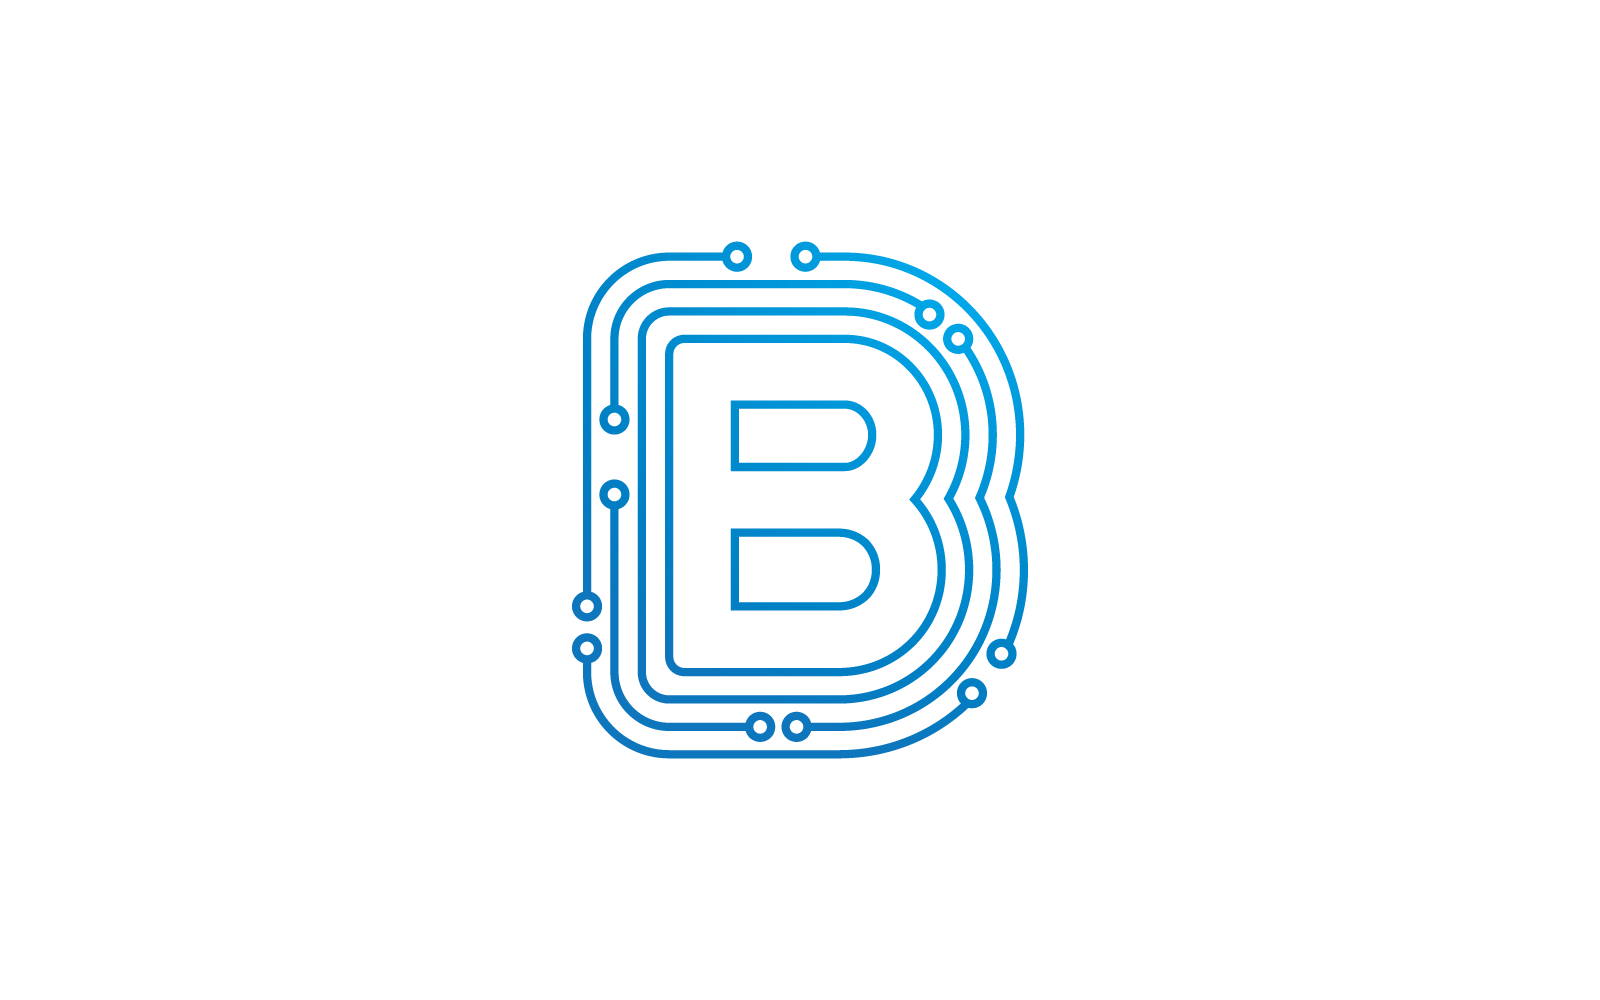 B kezdőbetű Áramkör technológia illusztráció logó vektor sablon